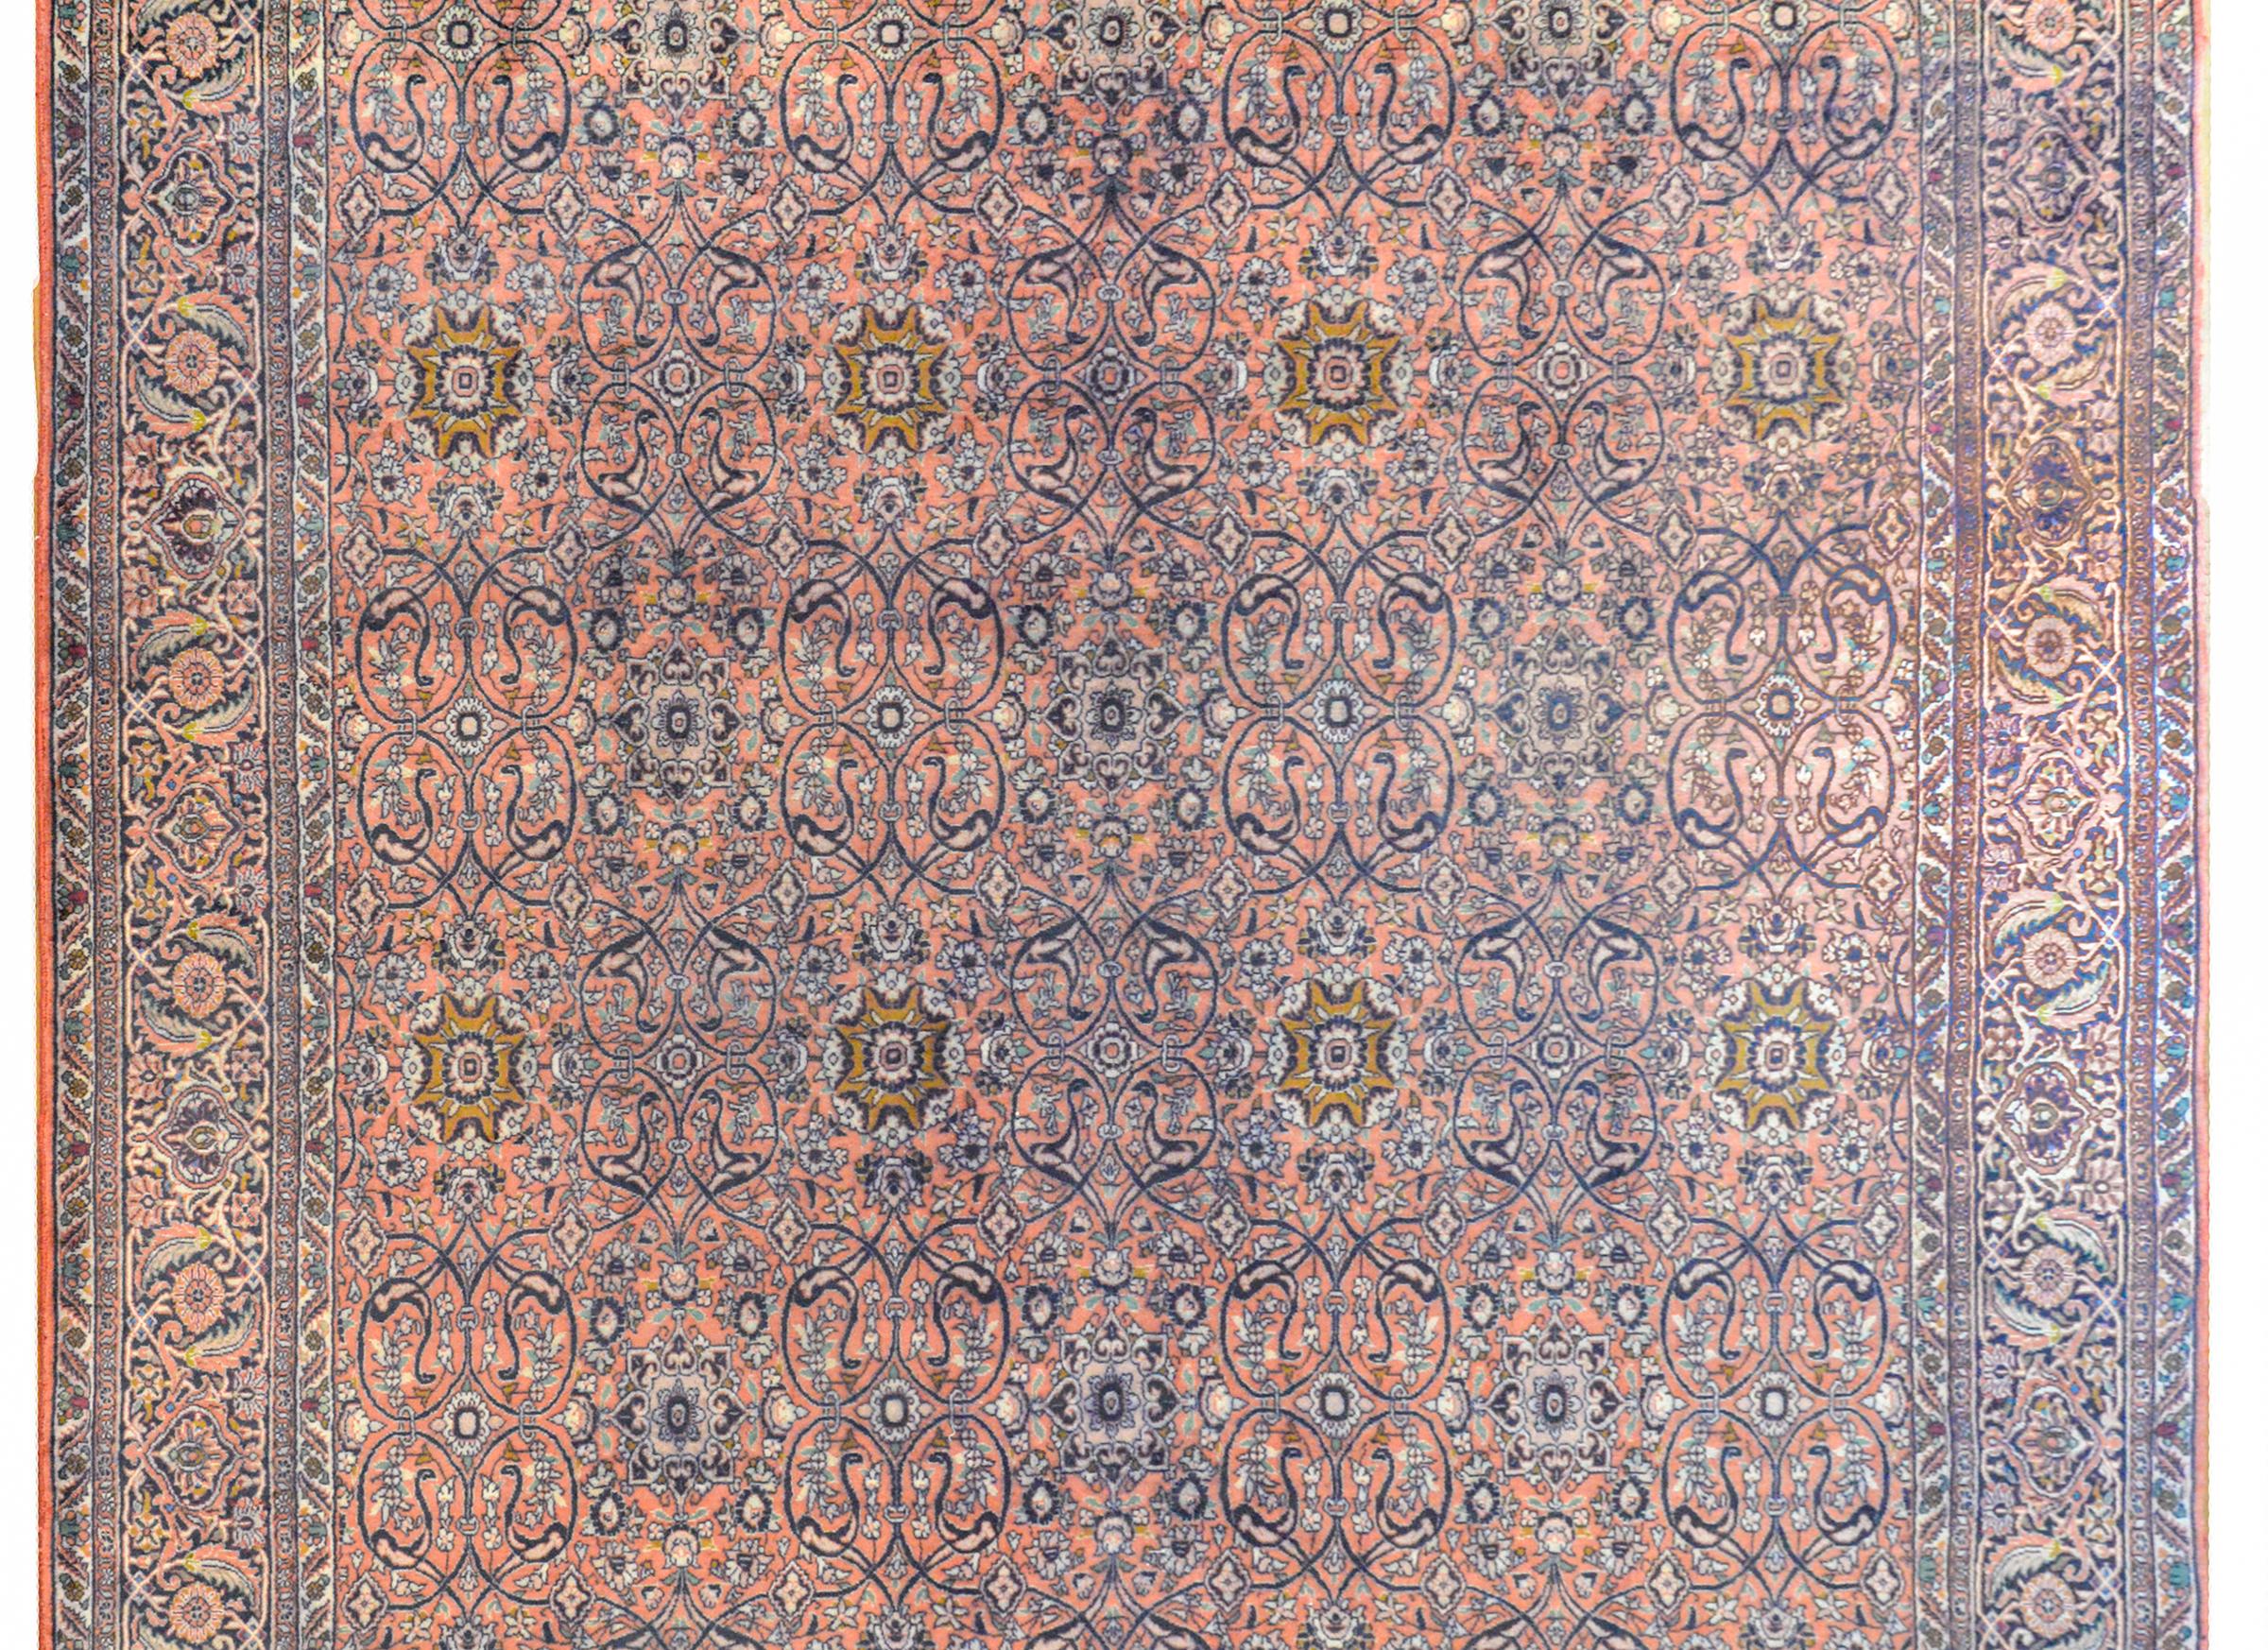 Un beau tapis persan vintage Bidjar avec un motif floral en treillis sur toute la surface avec des vignes défilantes et de grandes fleurs dorées tissées en indigo clair et foncé, rose et turquoise, sur un fond couleur saumon. La bordure est